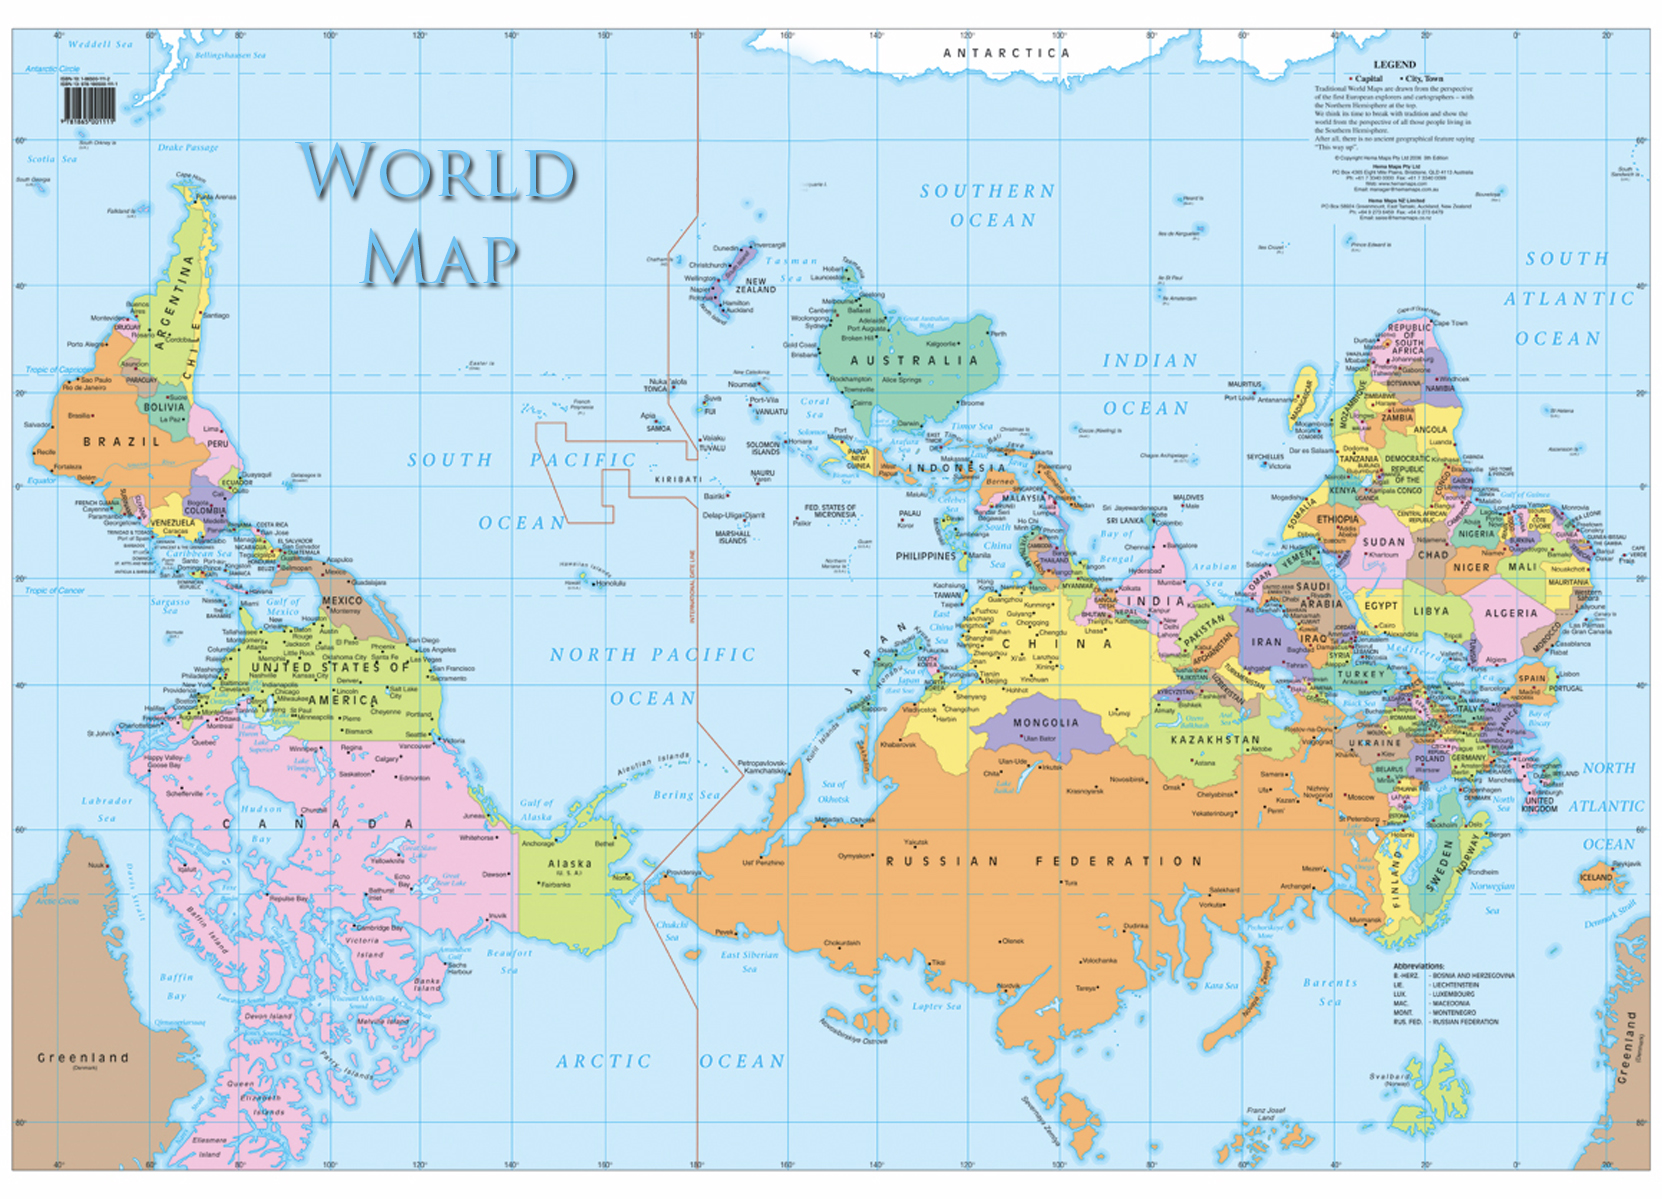 Liegt Europa auf jeder Weltkarte in der Mitte oder ist es in anderen